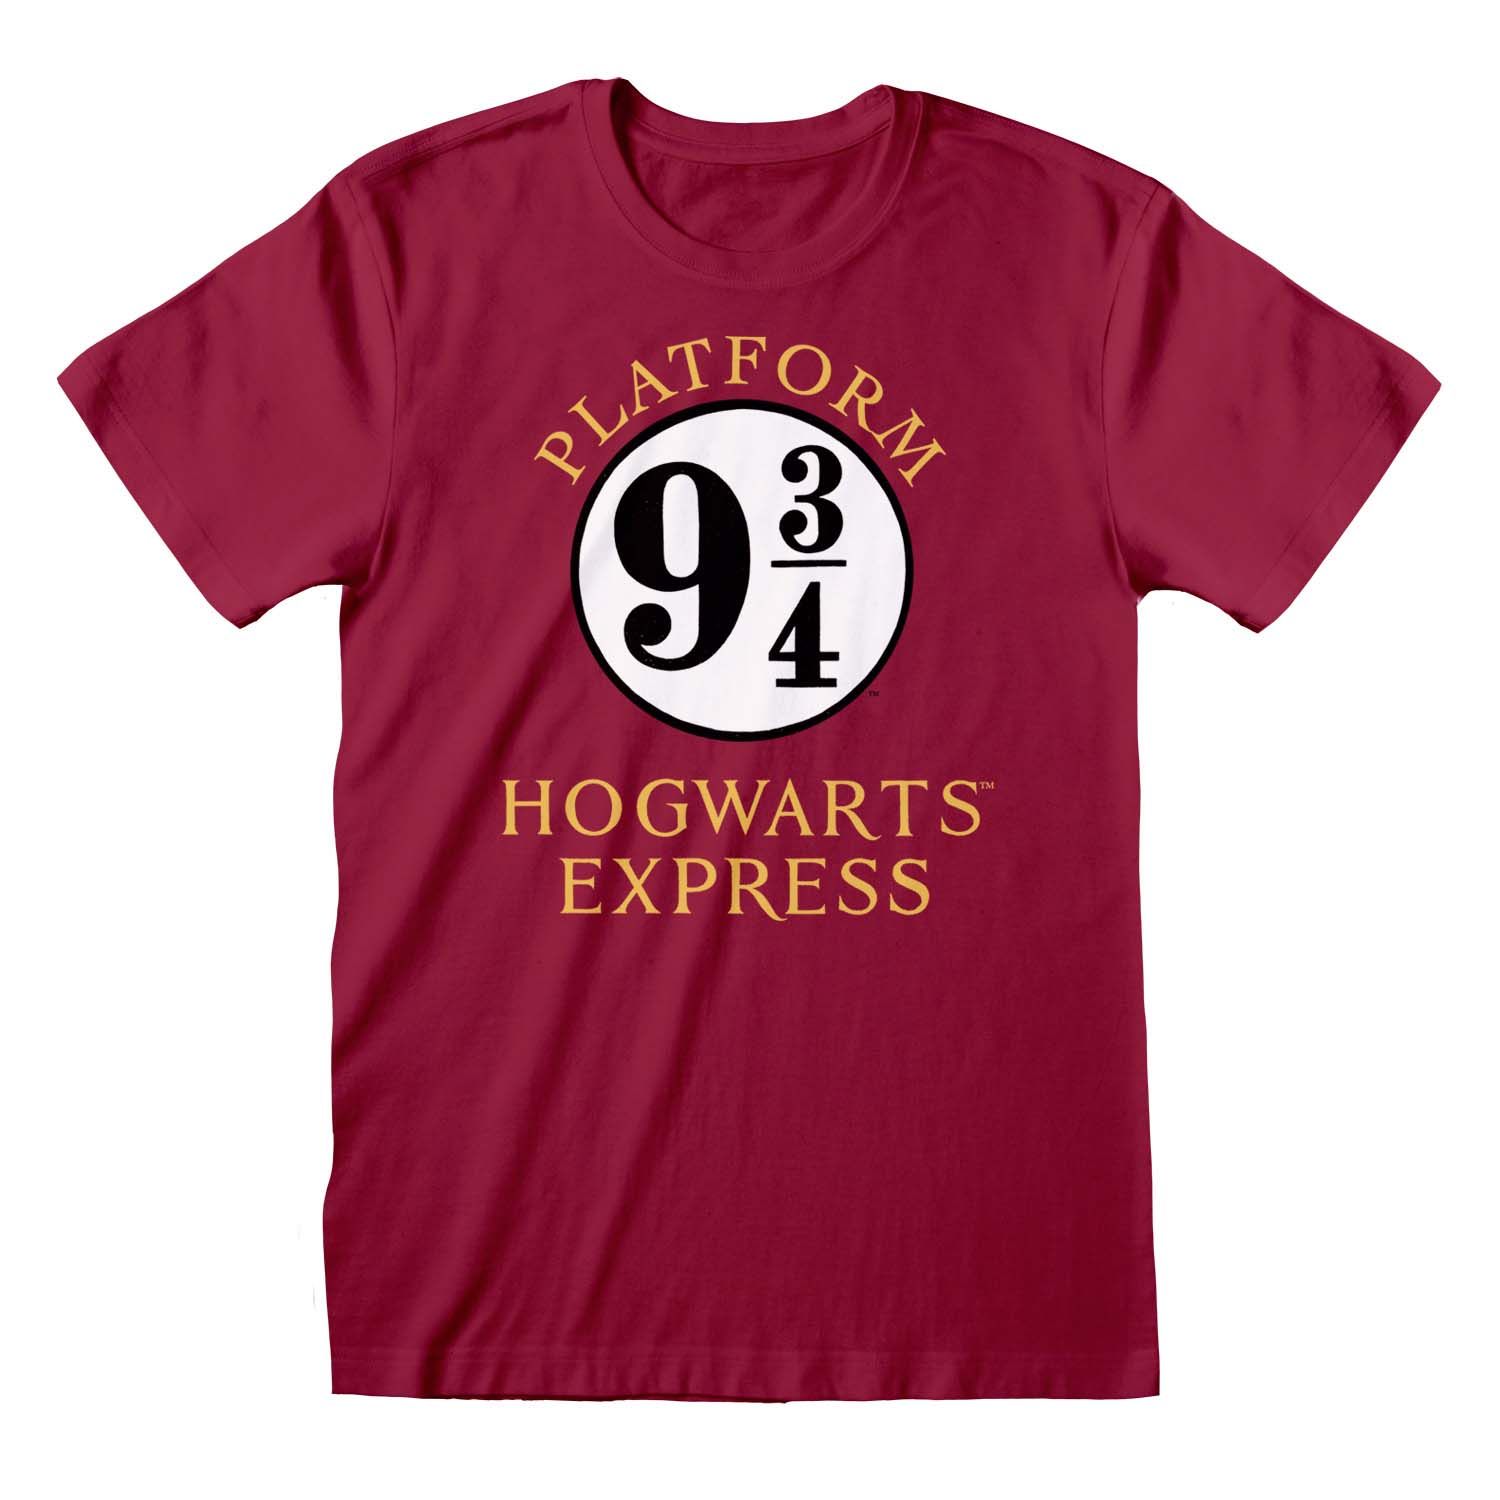 - Harry Platform T-Shirt Merchoid Express Hogwarts 9 3/4 Potter: